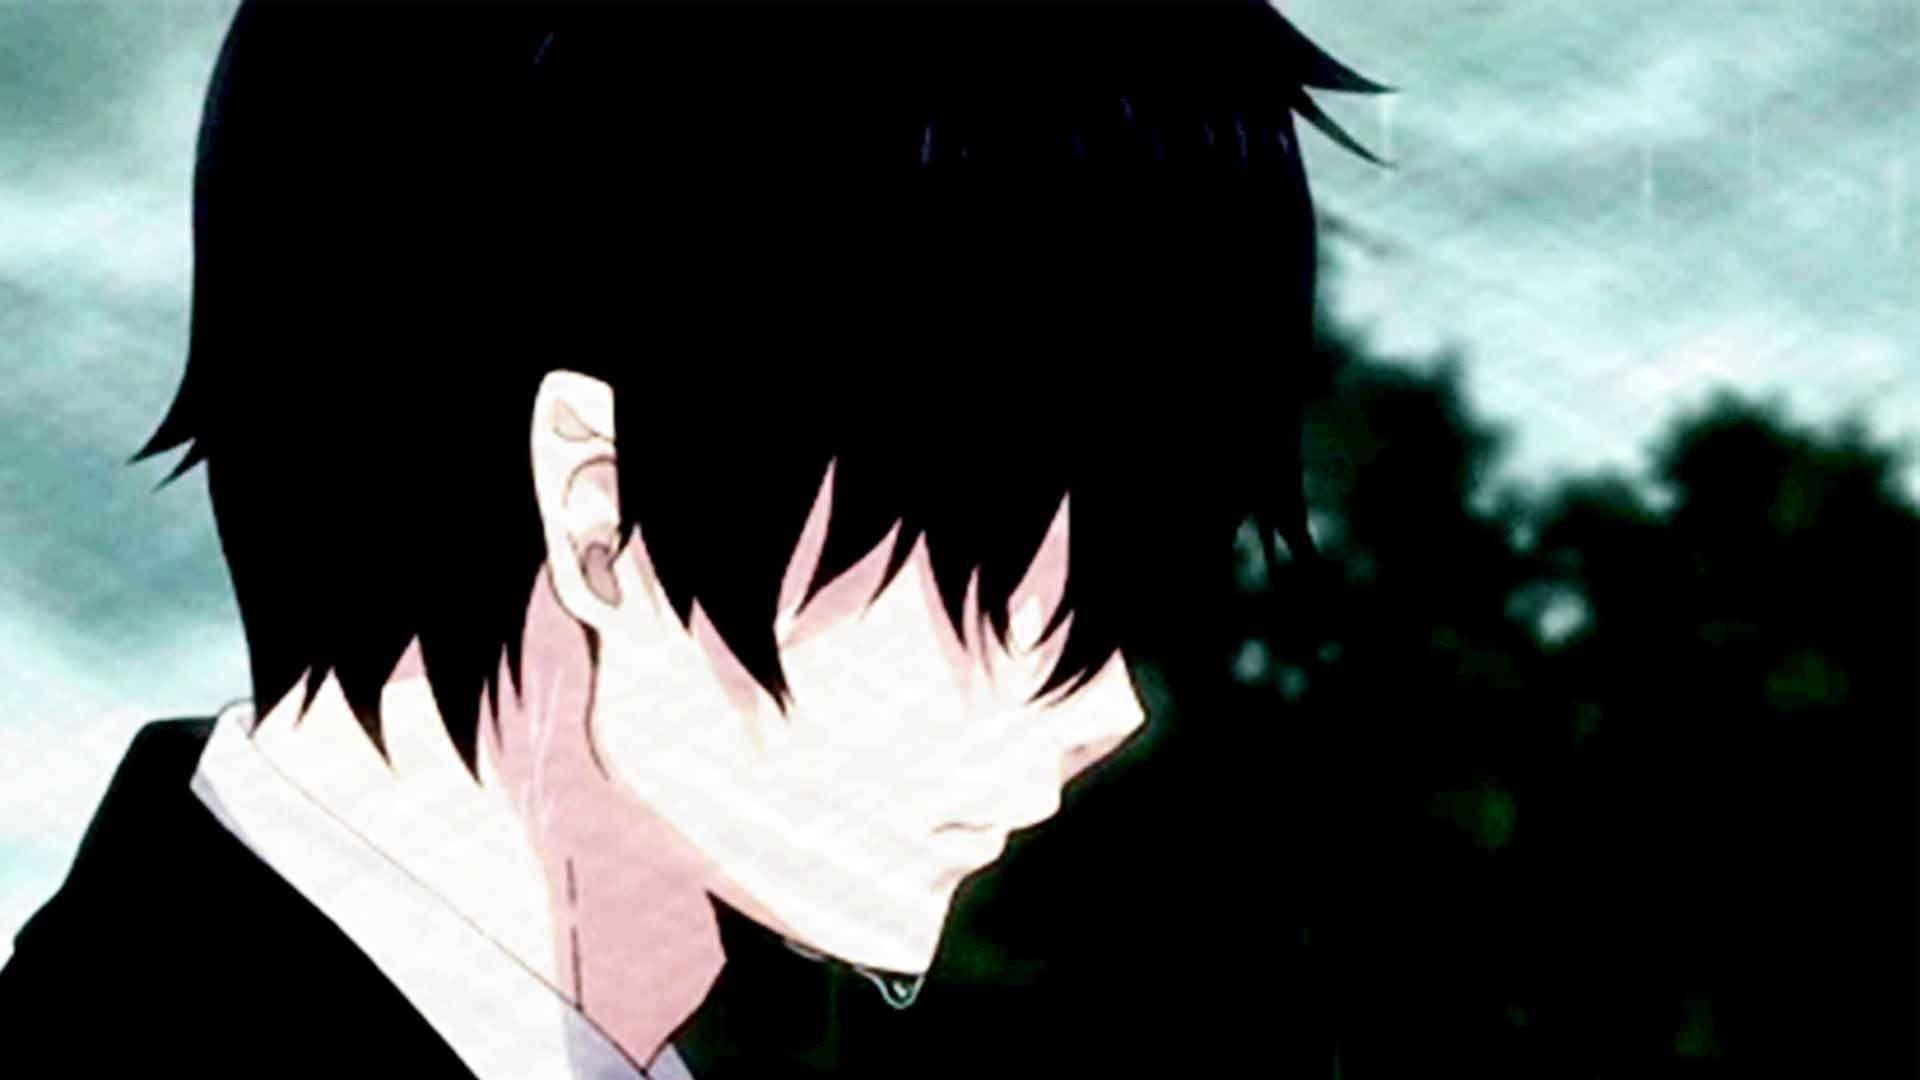 depressed anime boy crying